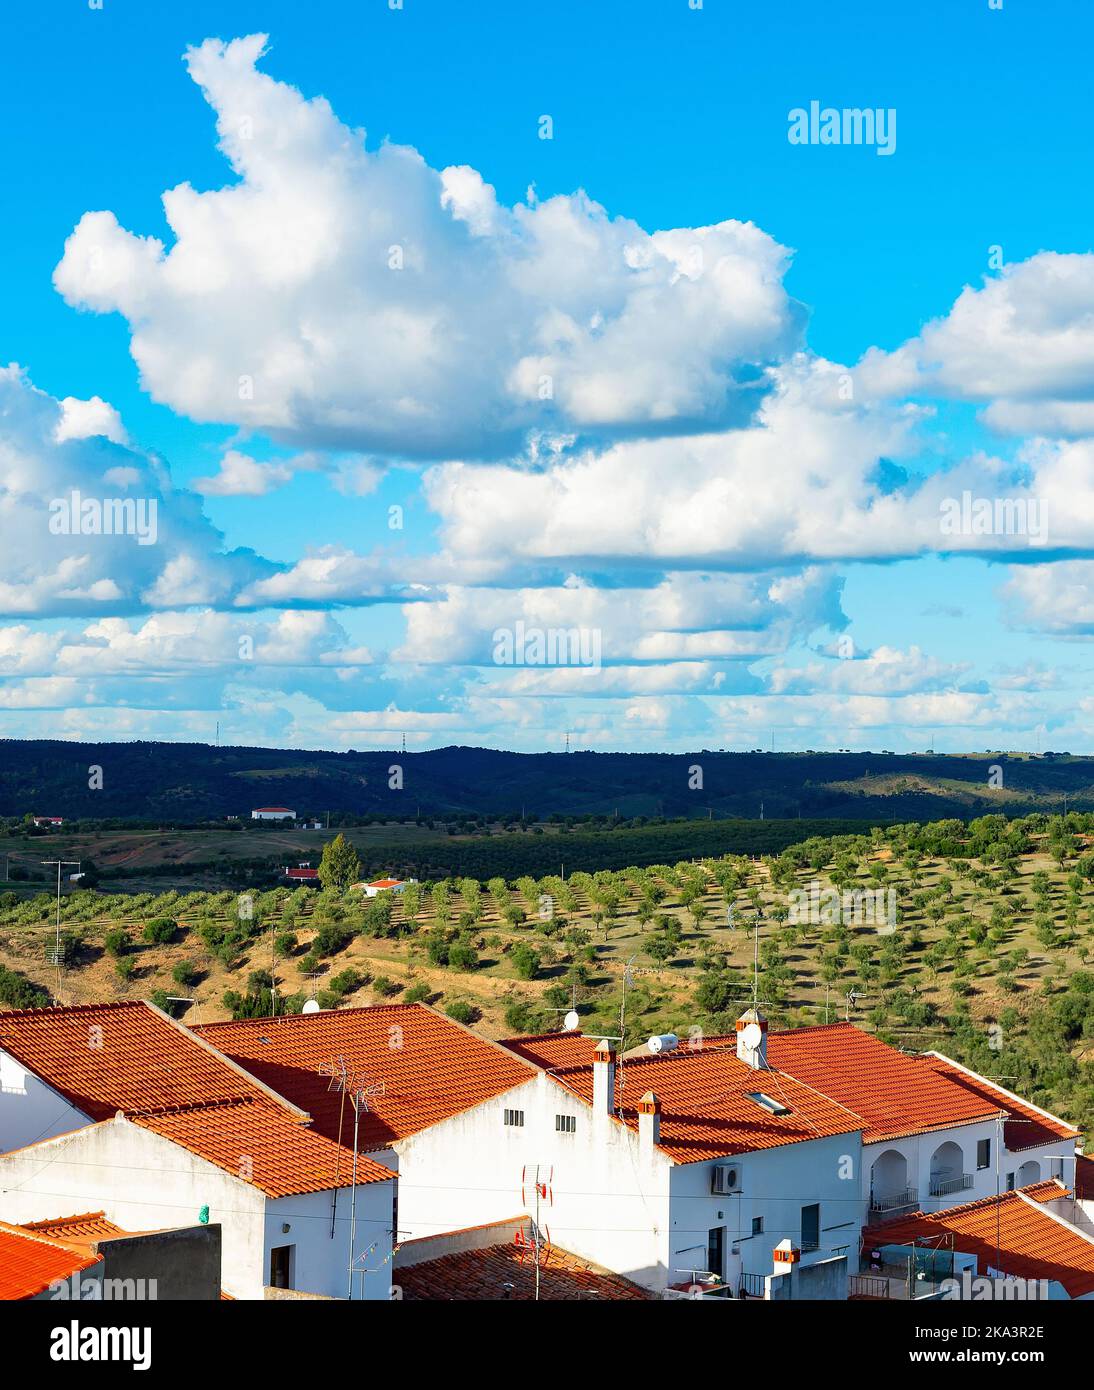 Paysage naturel avec vue sur le village et les oliviers, montagnes et nuages, Espagne Banque D'Images